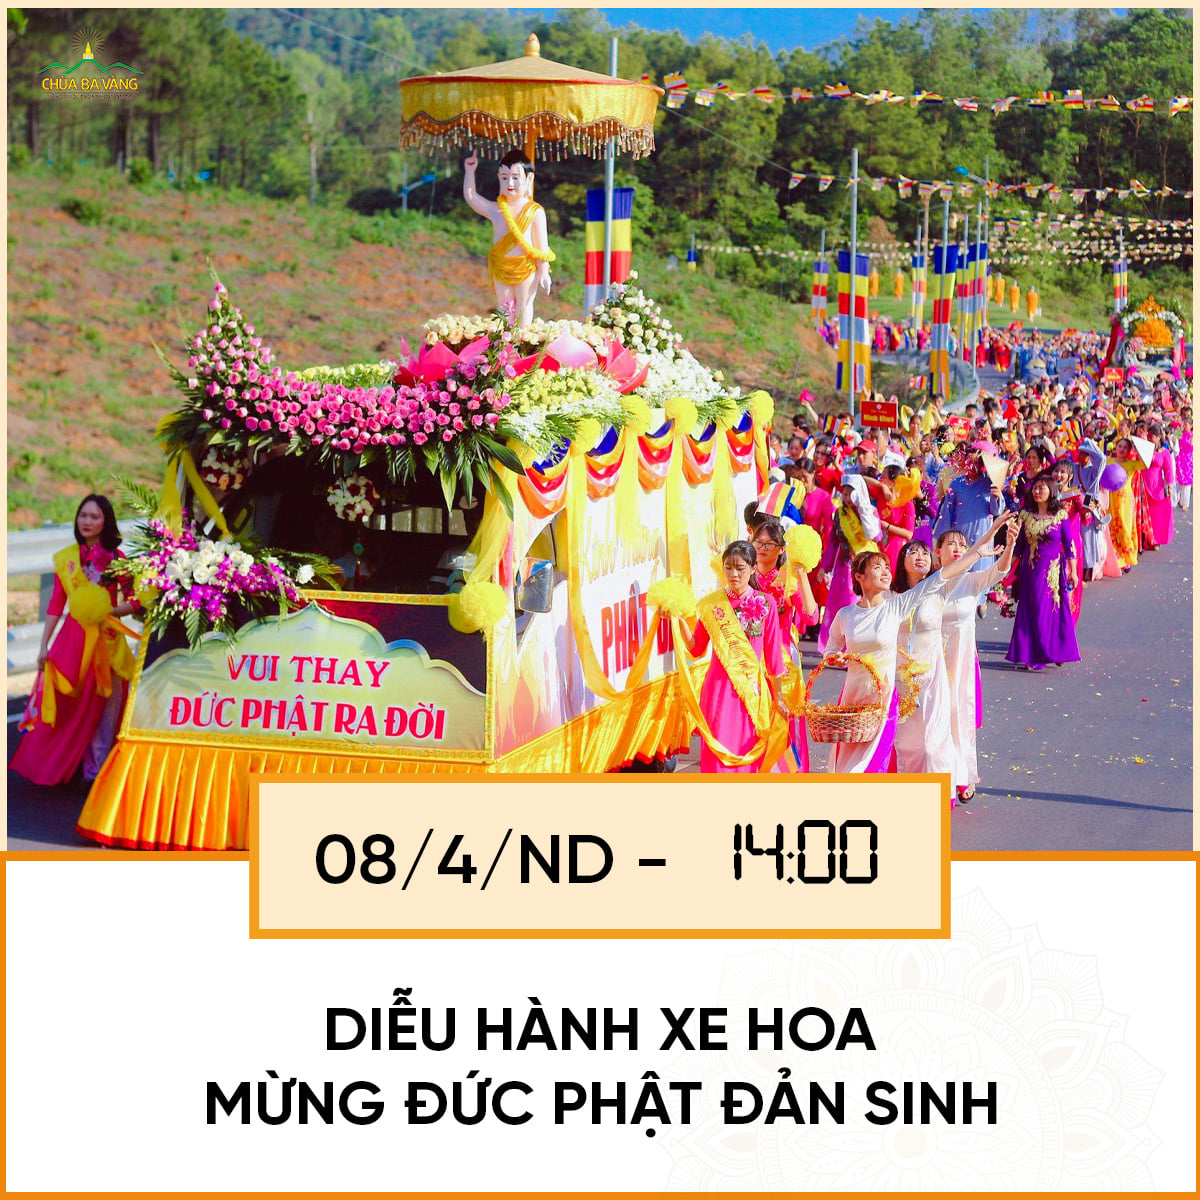 Diễu hành xe hoa mừng Phật đản sinh - Chùa Ba Vàng 2022